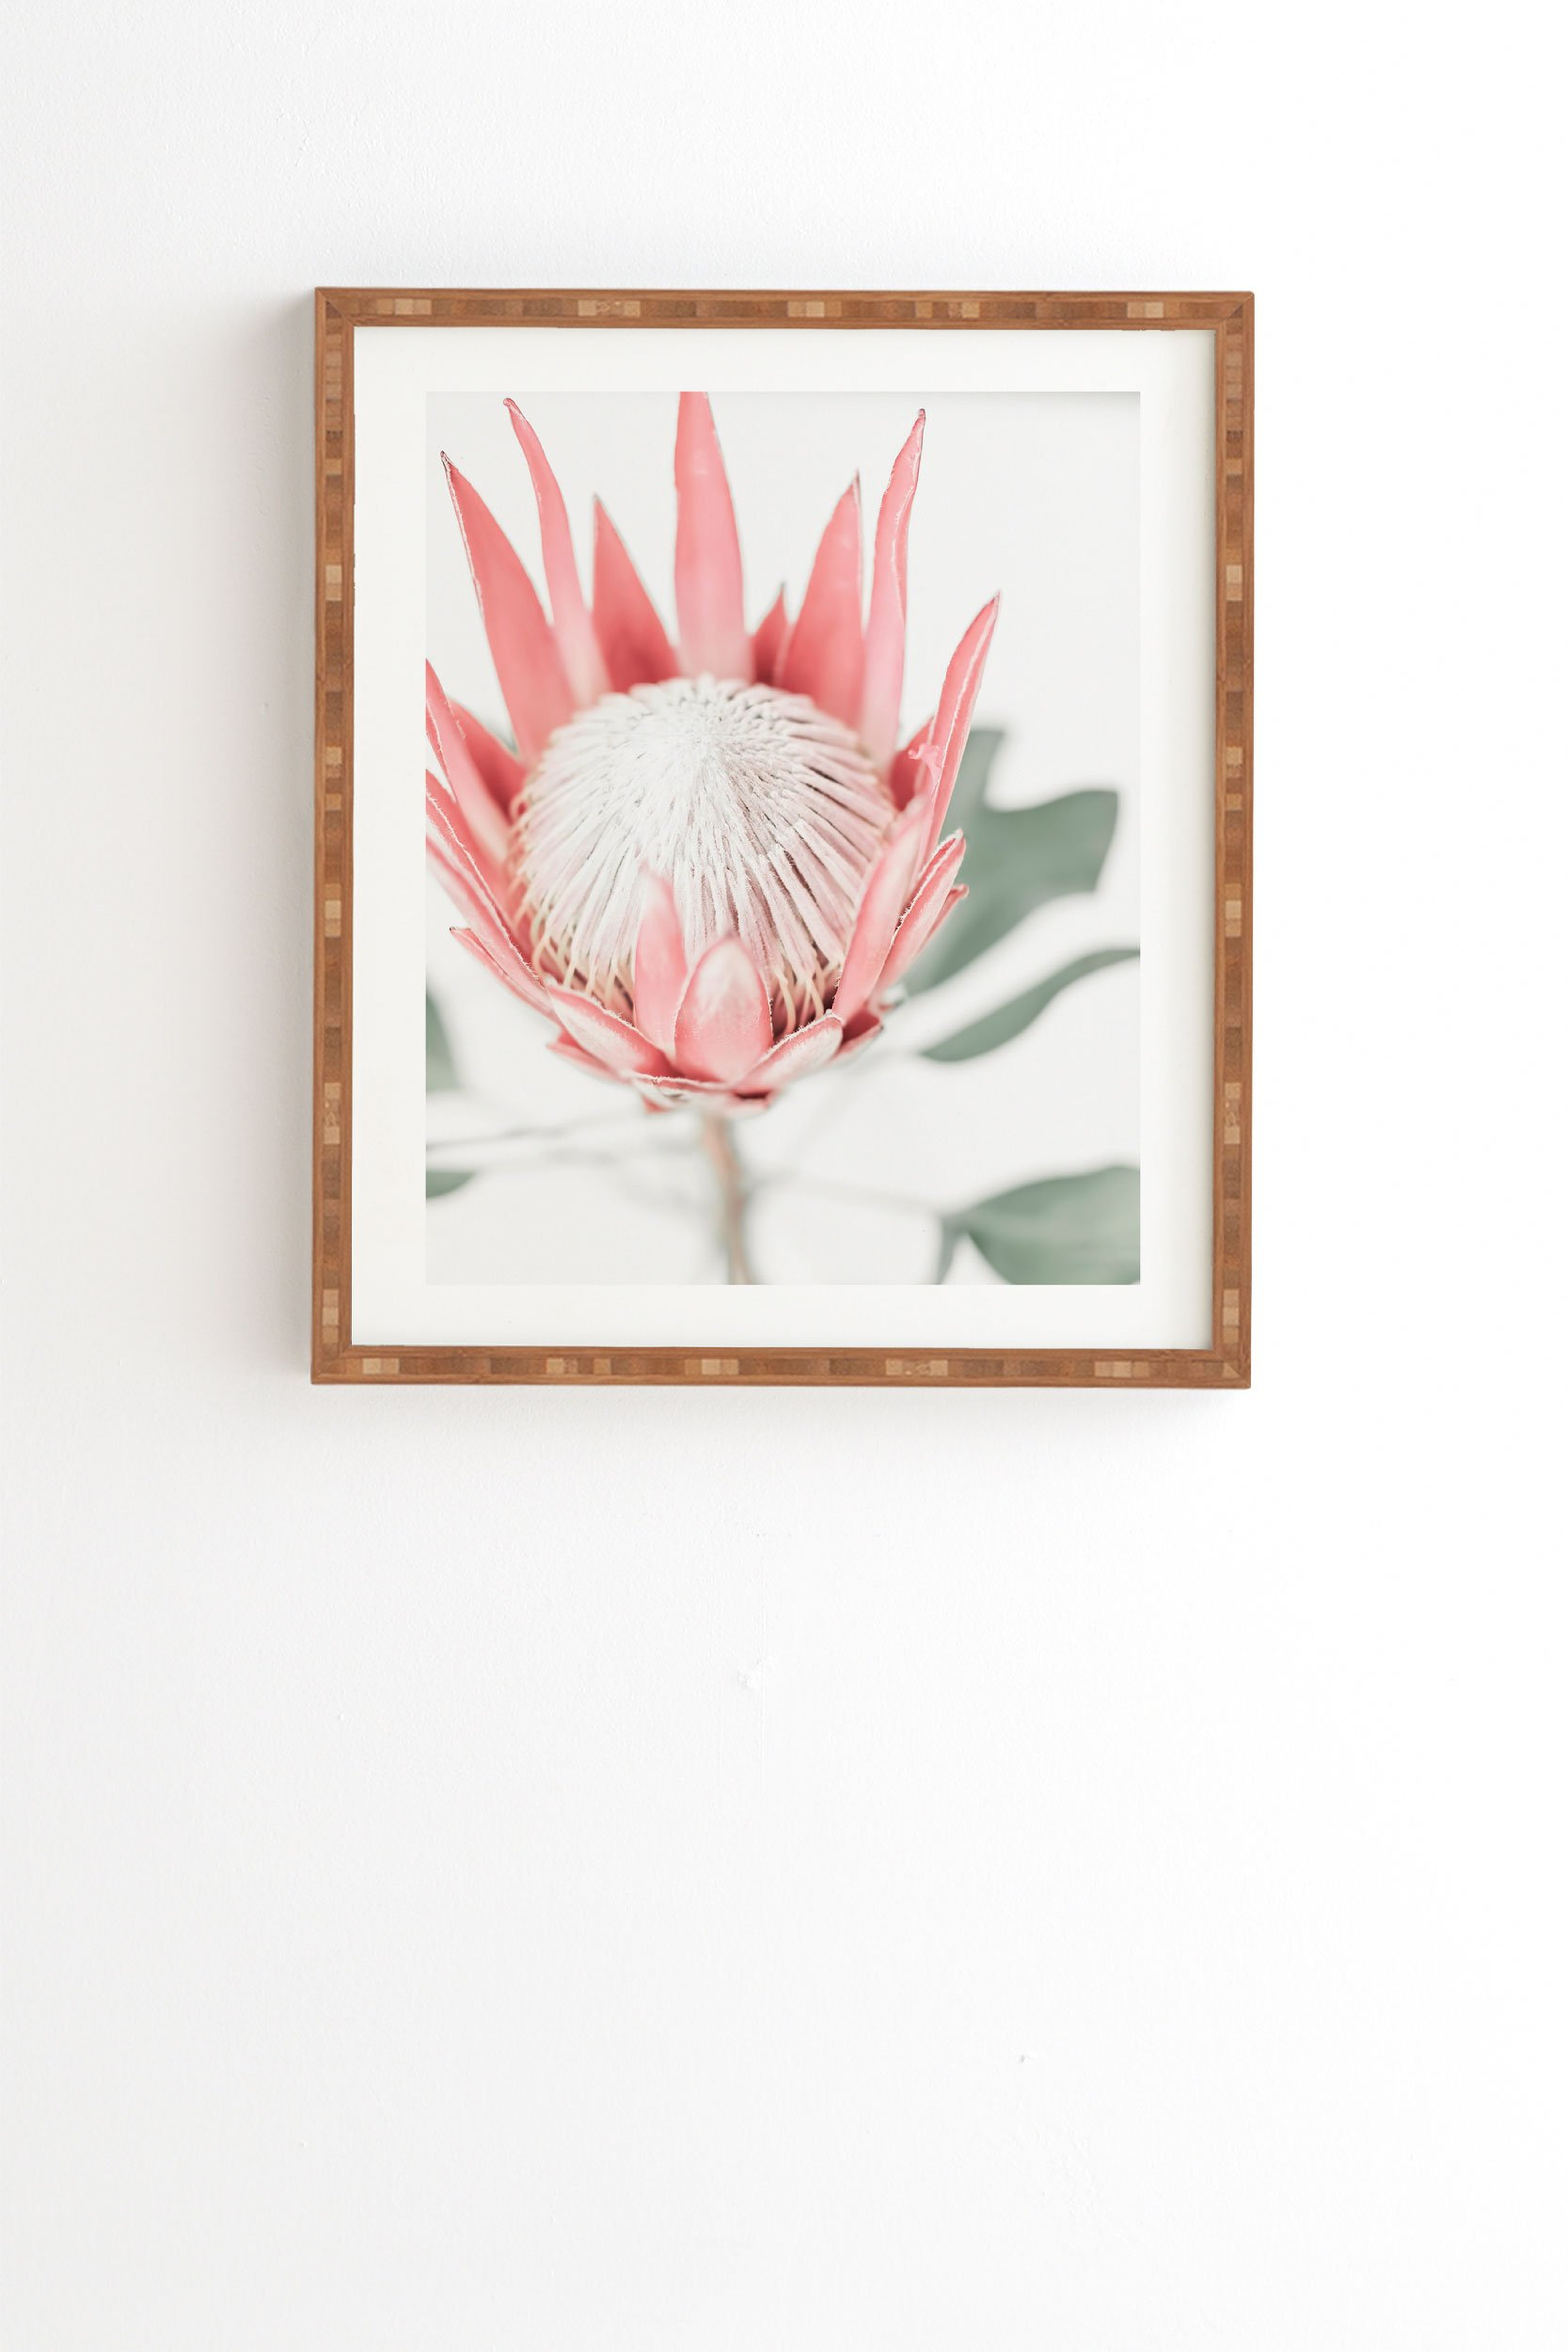 Ingrid Beddoes King Protea flower III Framed Wall Art - 8" x 9.5" - Wander Print Co.